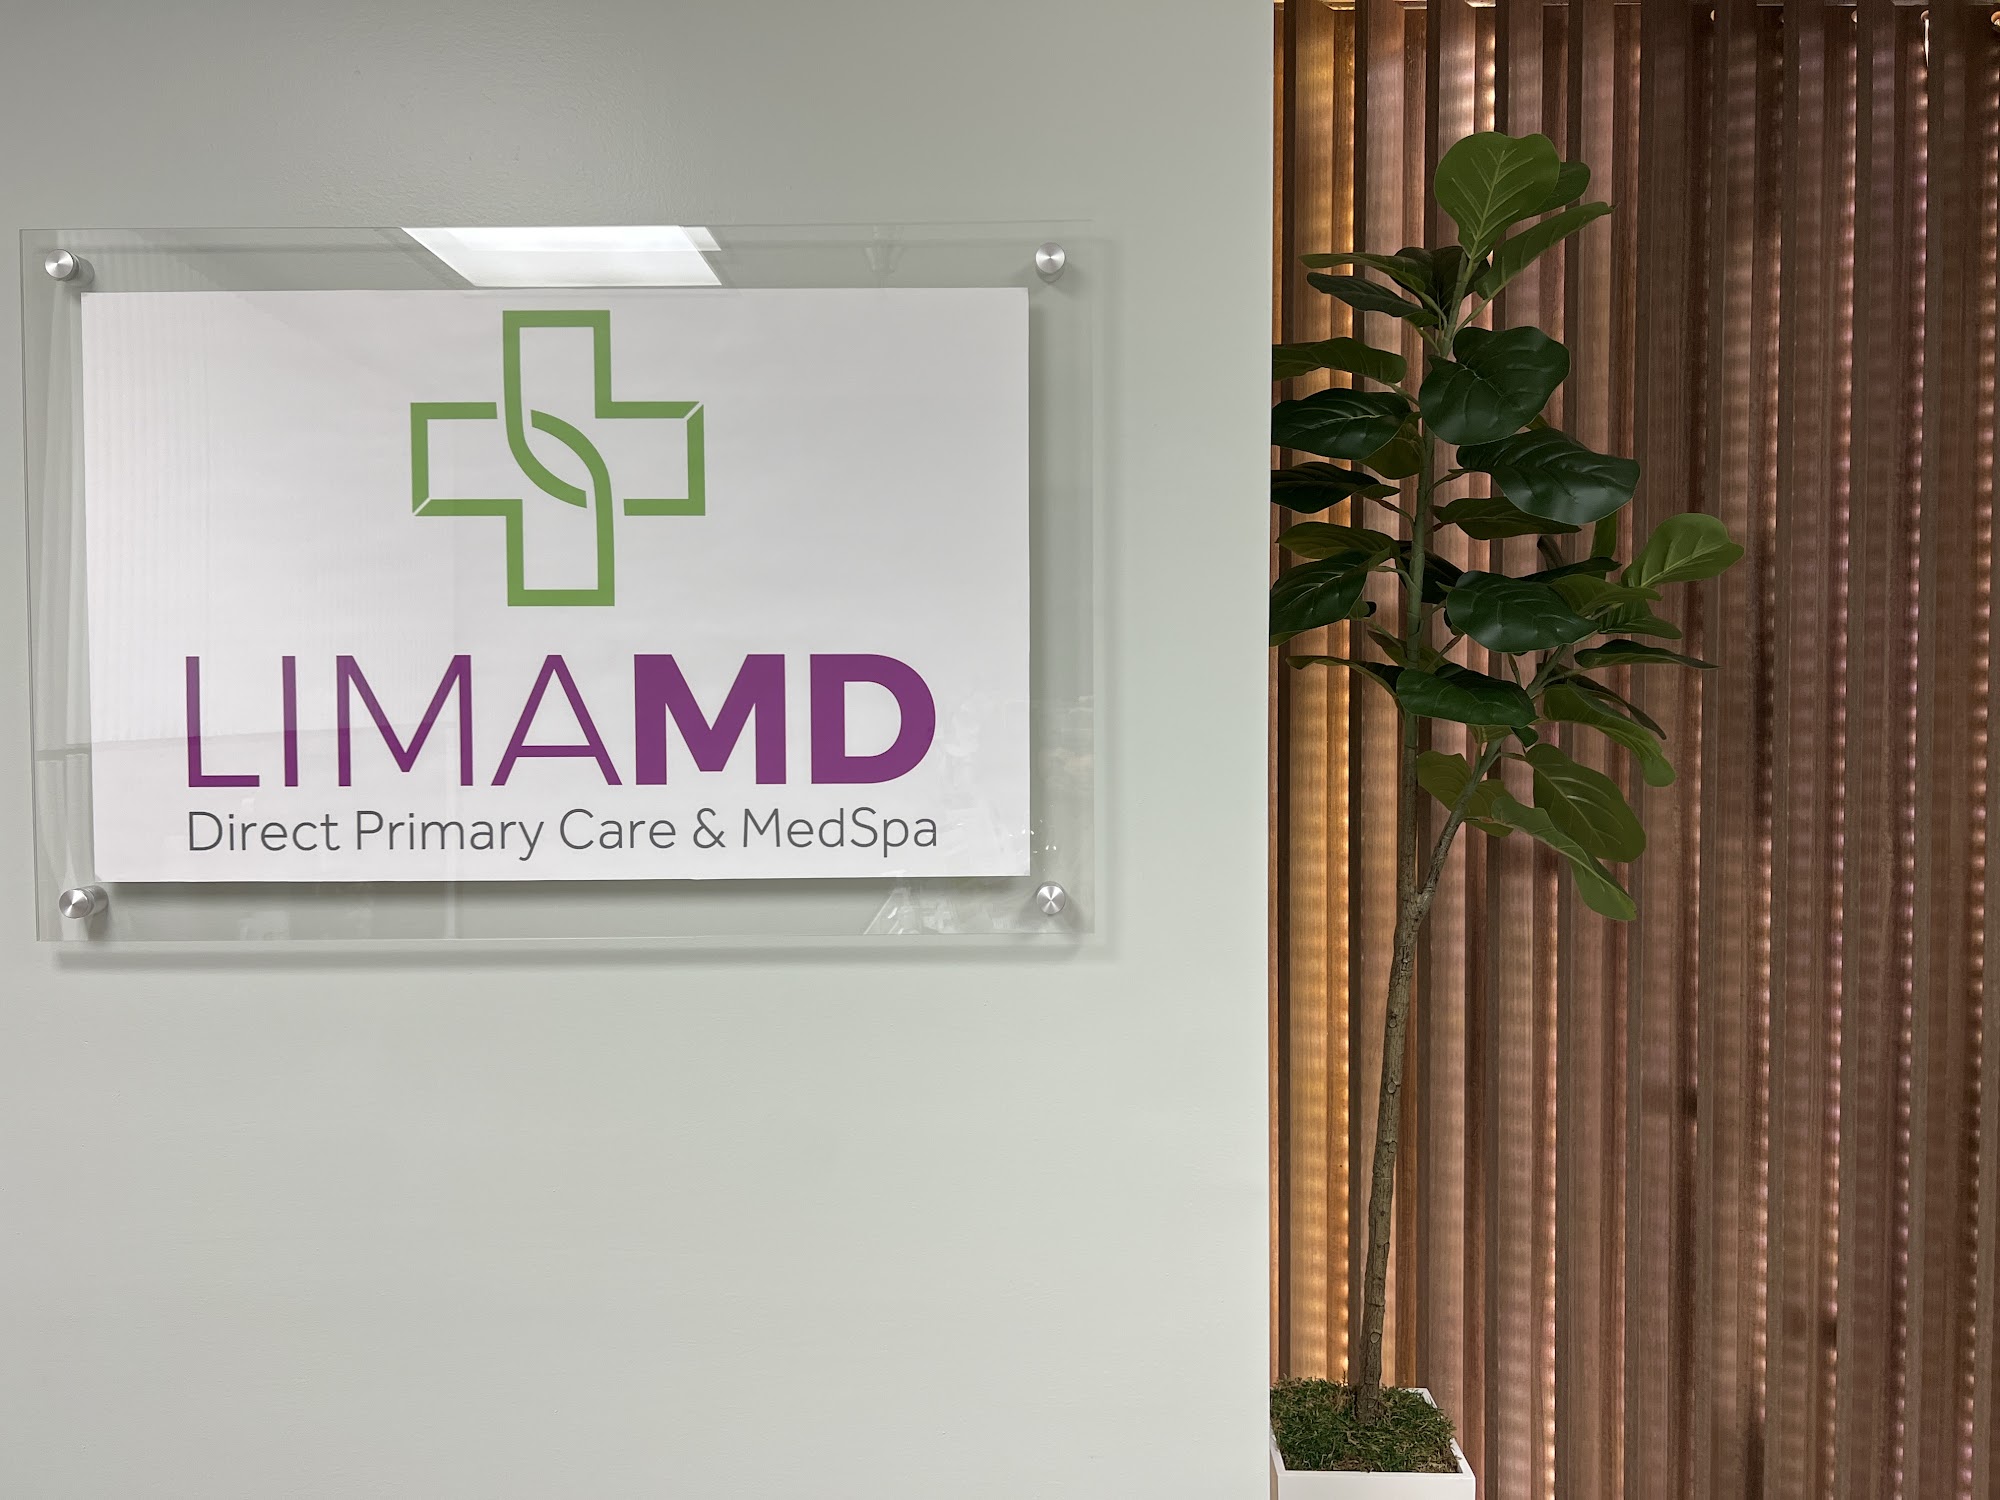 Lima MD Direct Primary Care & MedSpa